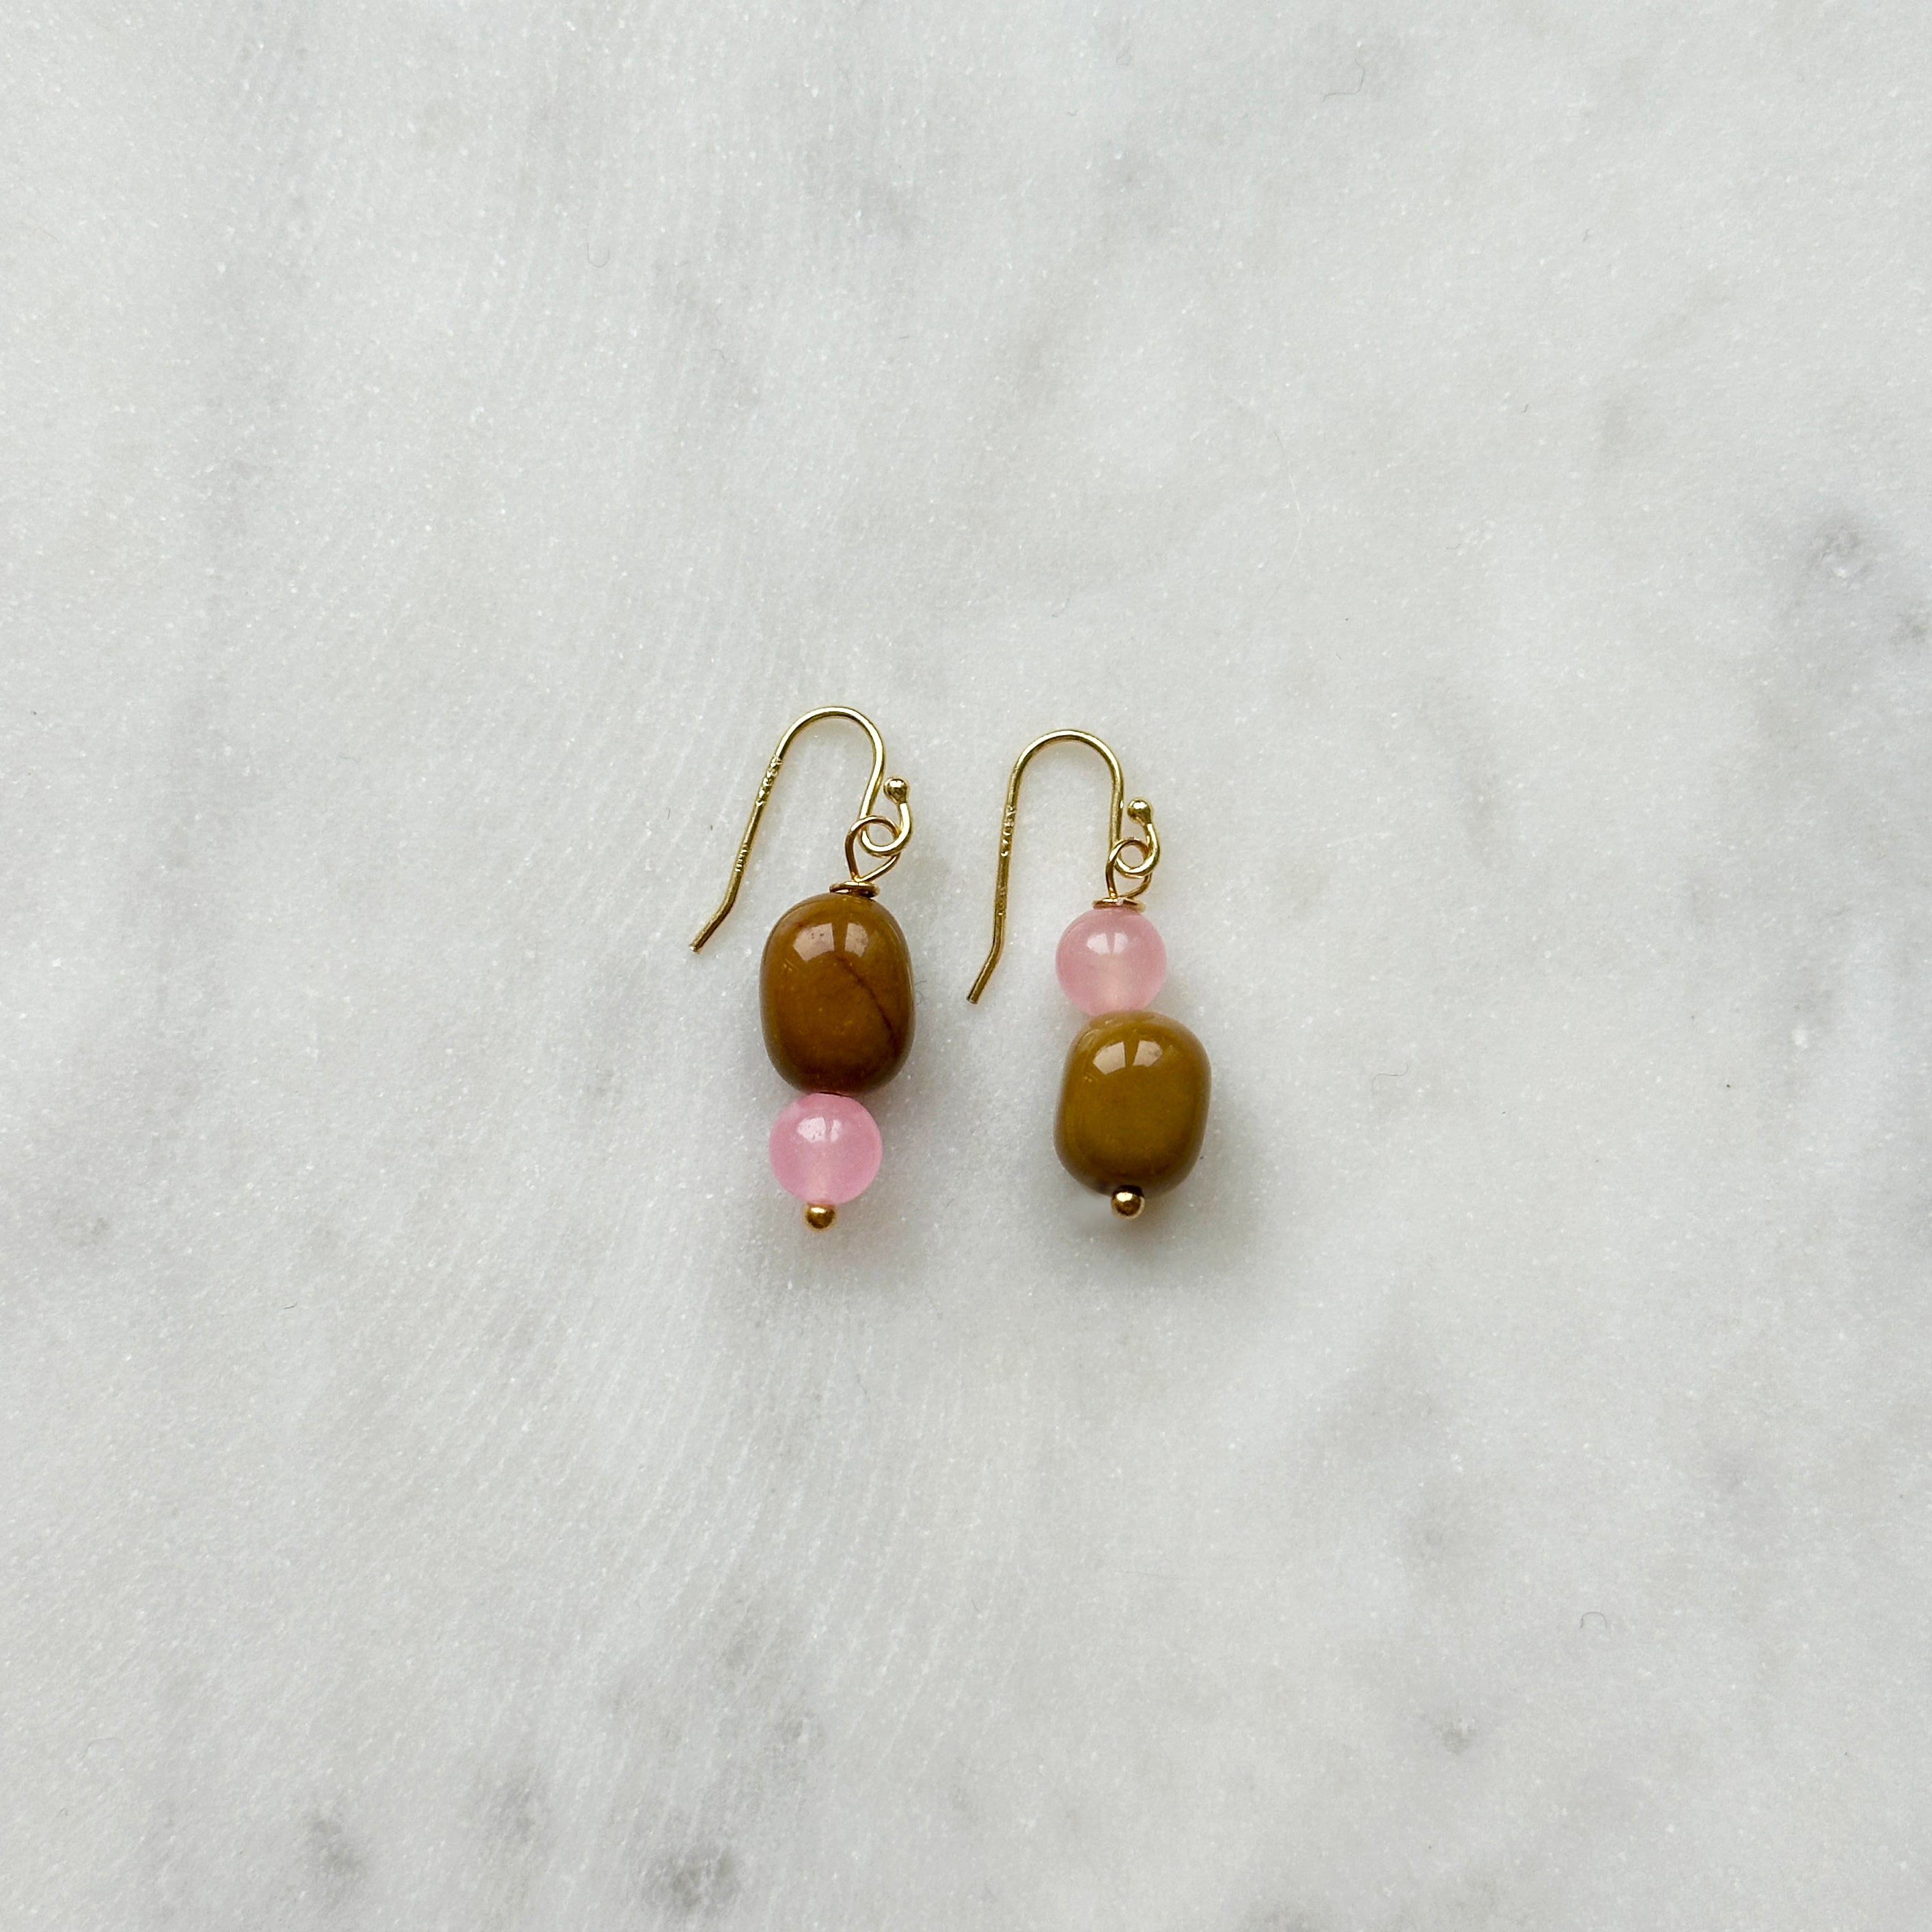 Love & Balance (Mookaite & Rose Quartz) Earrings